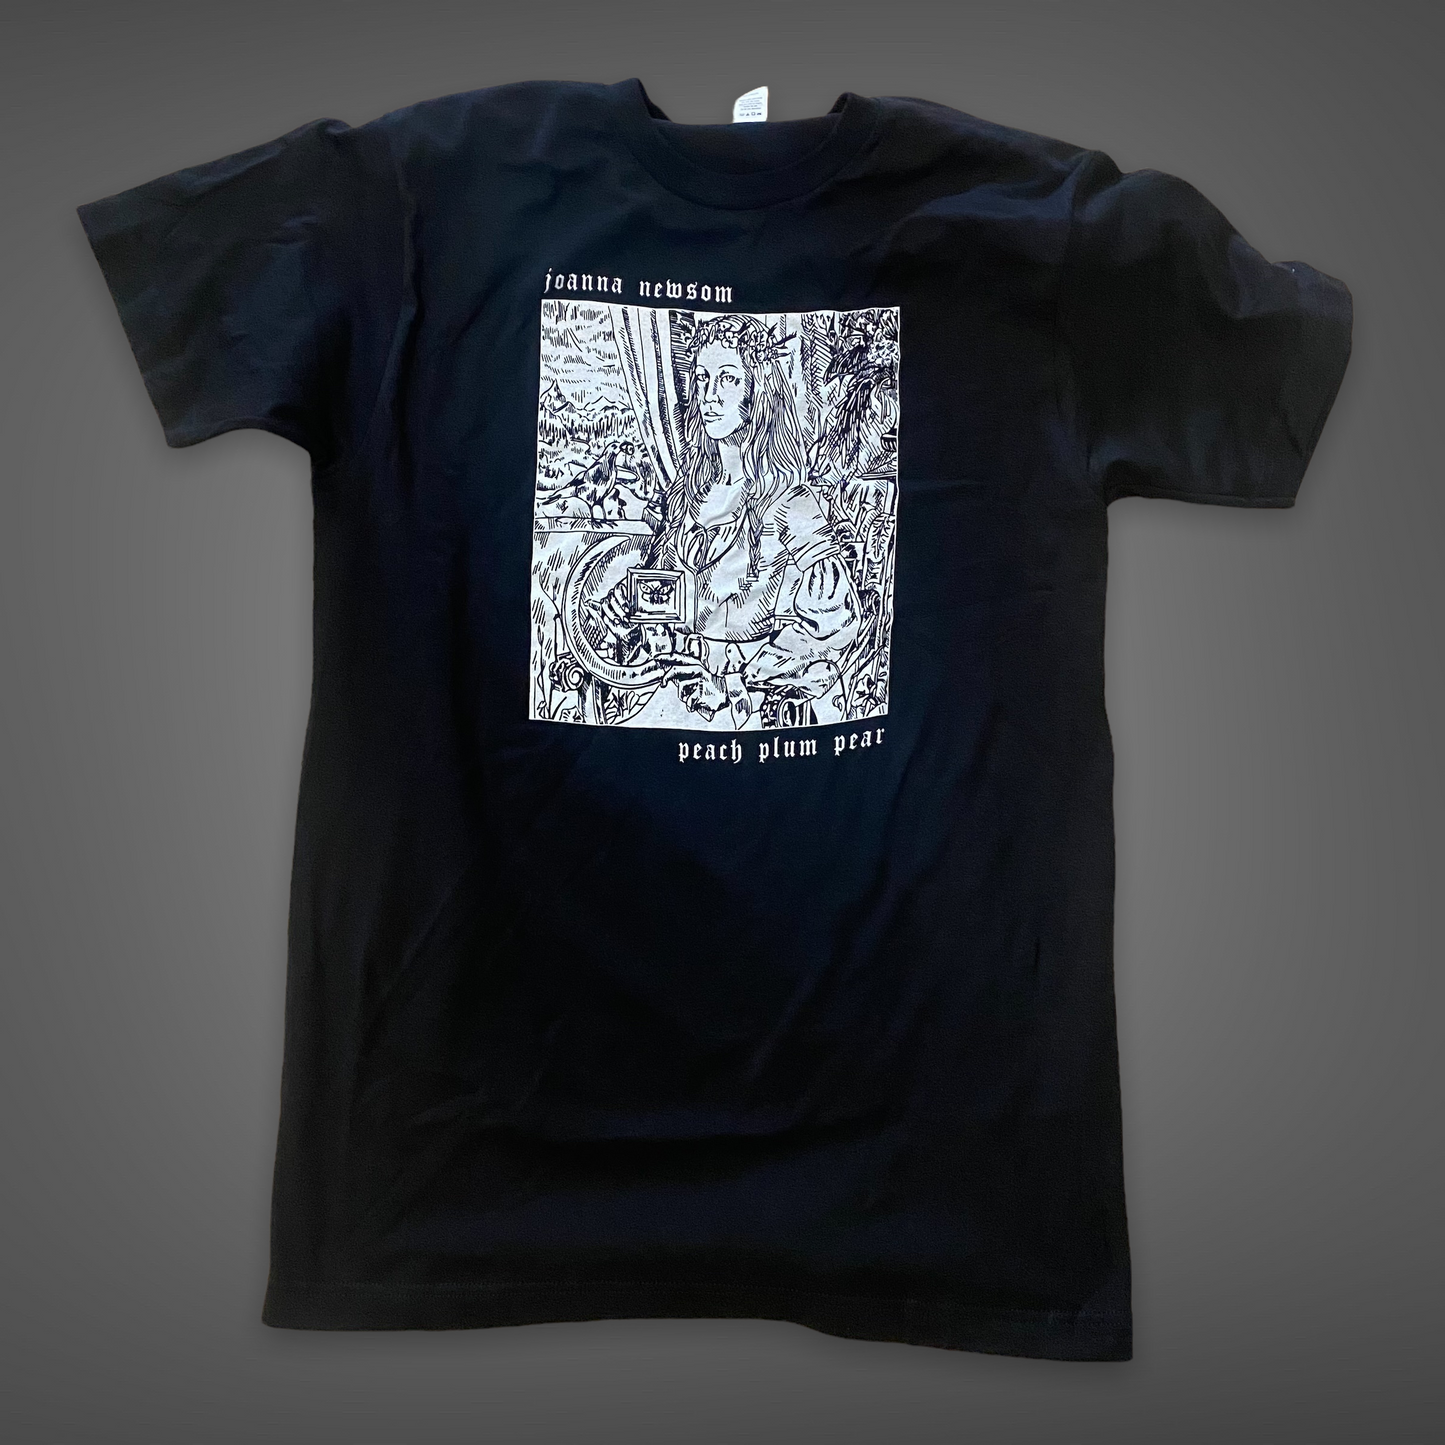 Joanna Newsom Woodcut Metal T-shirt